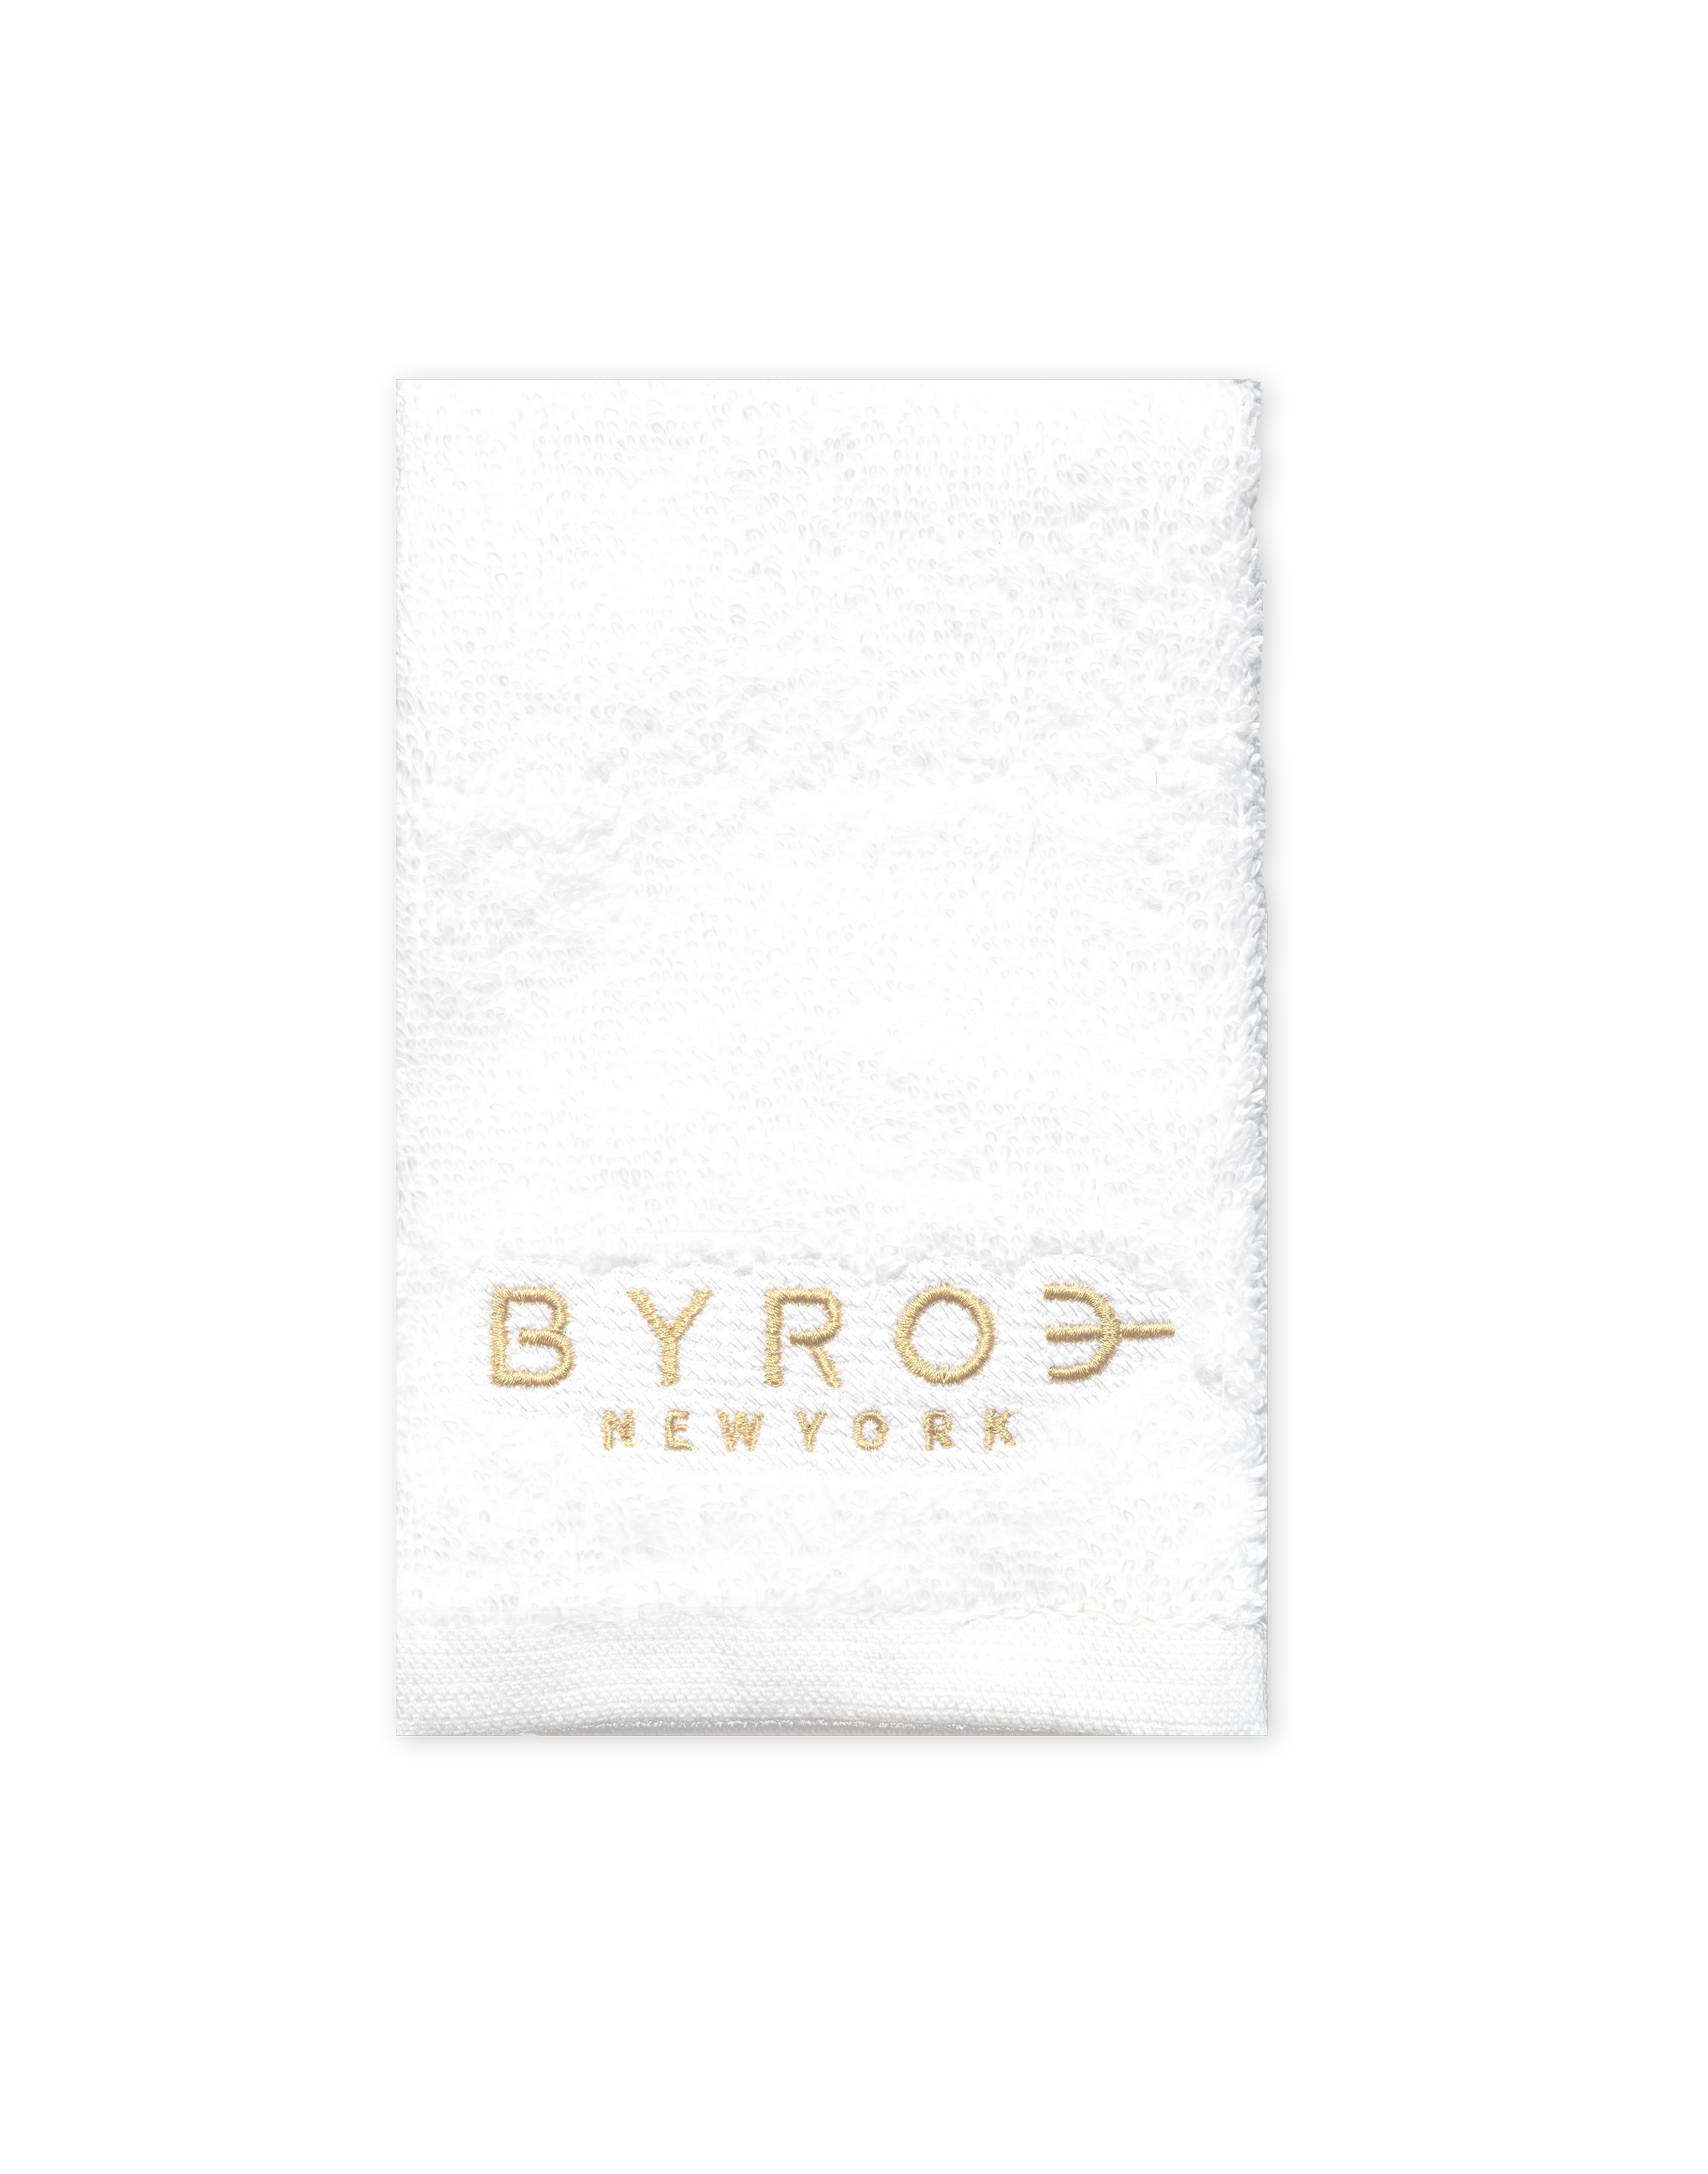 BYROE Towel